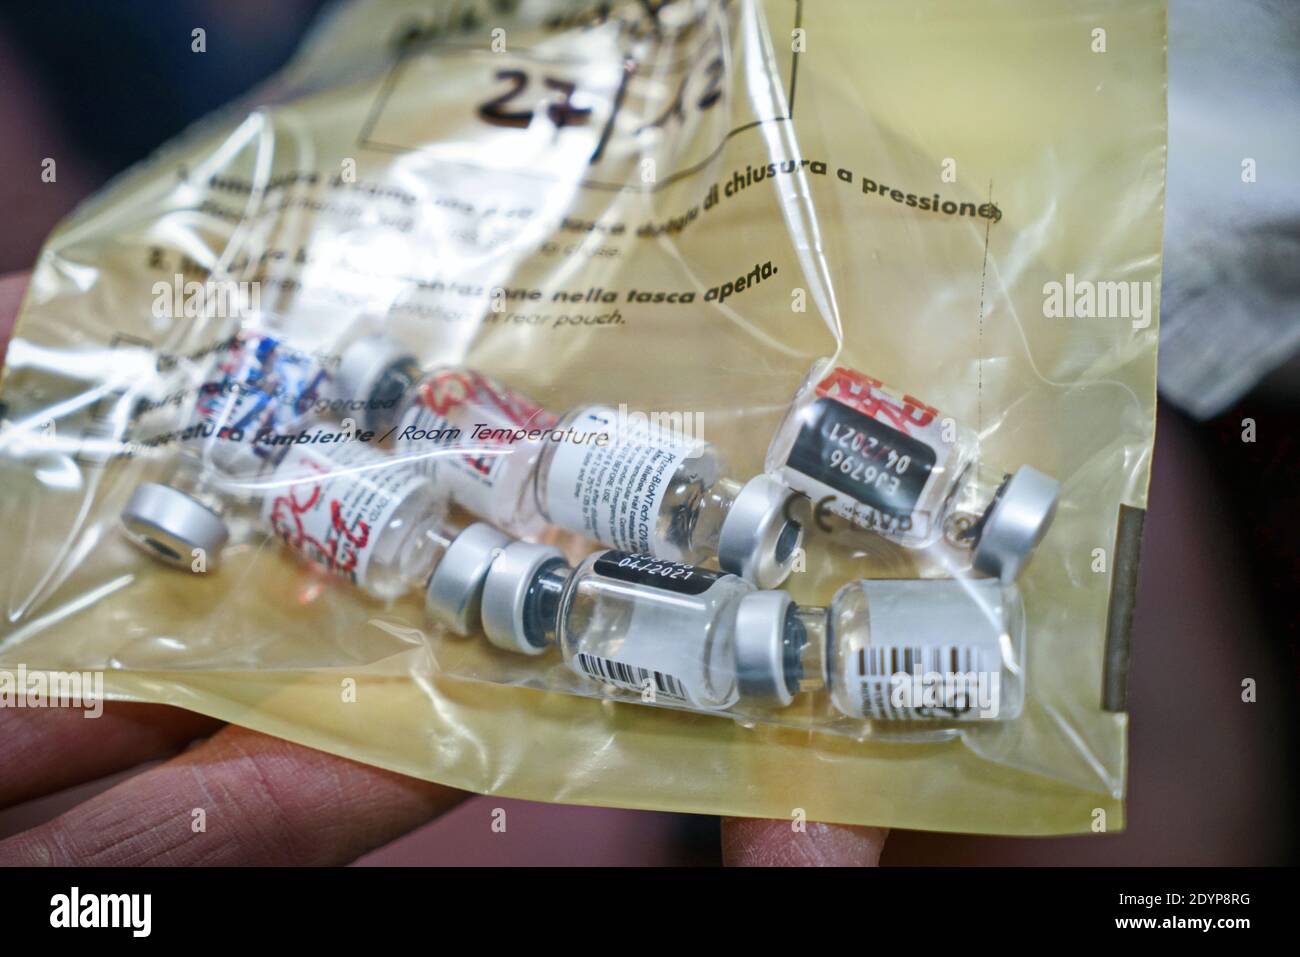 Bottiglie vuote di vaccino del coronavirus di Pfizer dopo l'uso, presso l'Ospedale Amedeo di Savoia. Torino - 27 dicembre 2020 Foto Stock